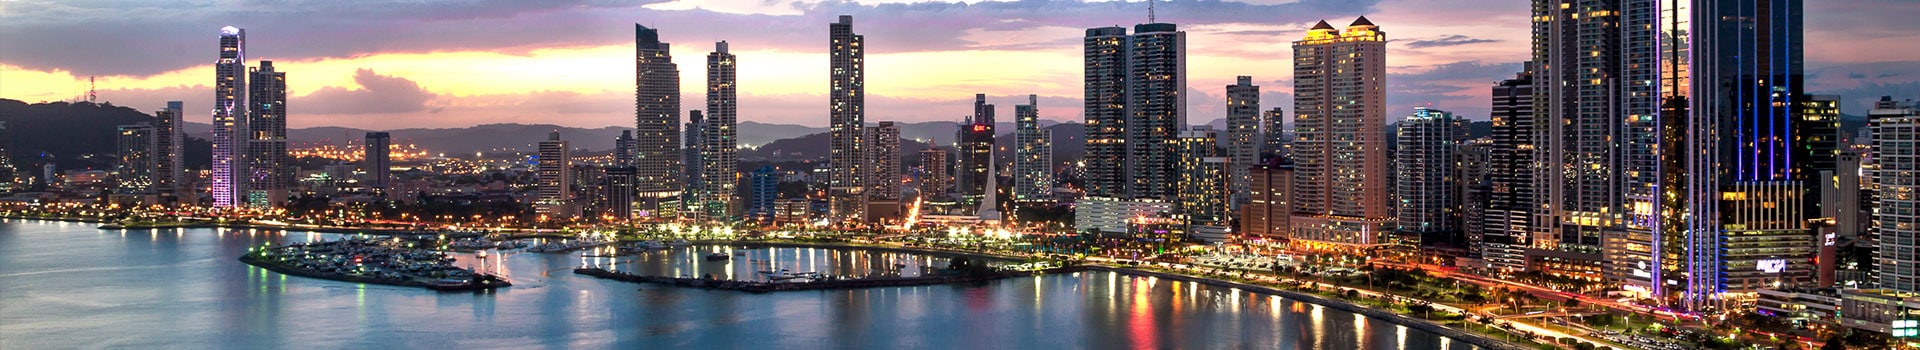 Guayaquil - Panama City